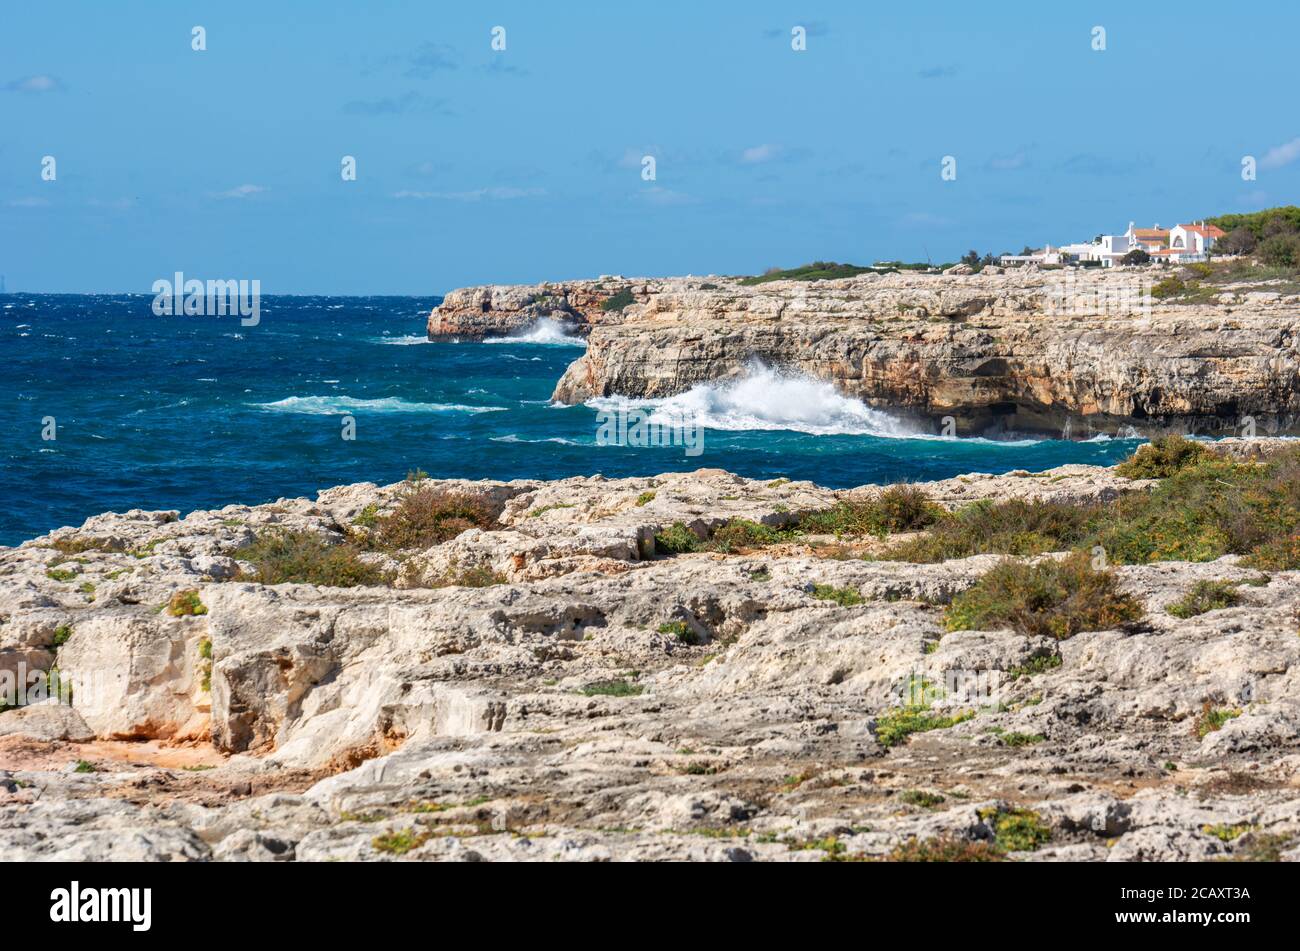 Costa rocosa del oeste de Menorca, puerto de Ciutadella. Menorca, España Foto de stock